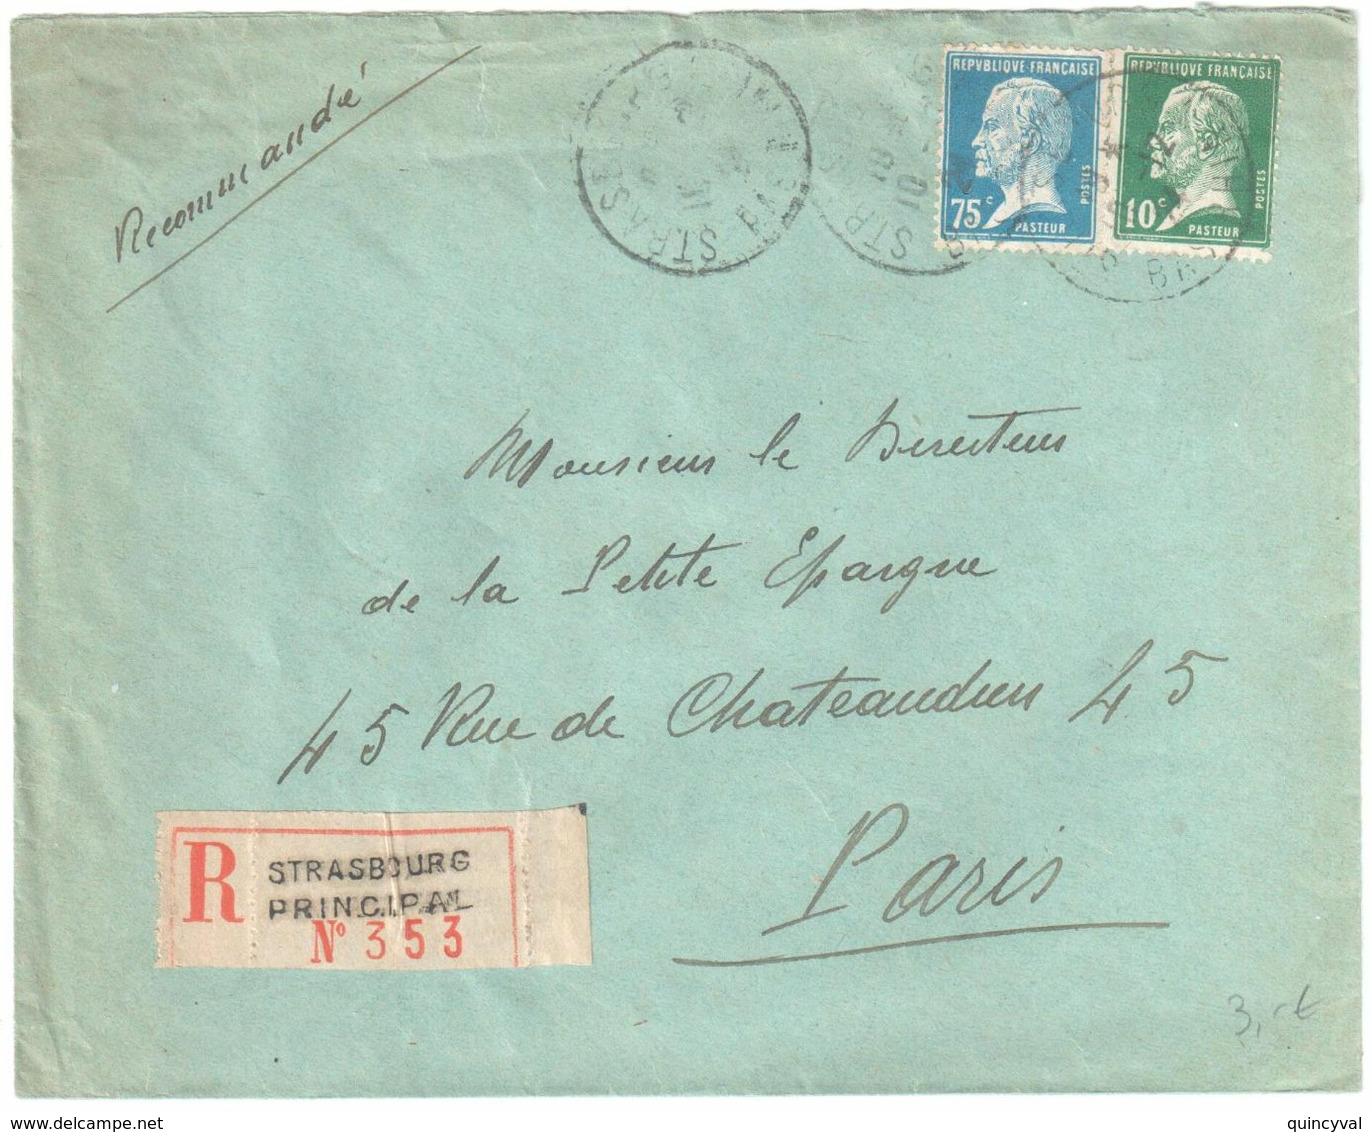 ARLES S RHONE Lettre Recommandée 1 F Pasteur Bord De Feuille 5c Blanc Yv 111 179 Ob 18 1 1926 - Briefe U. Dokumente